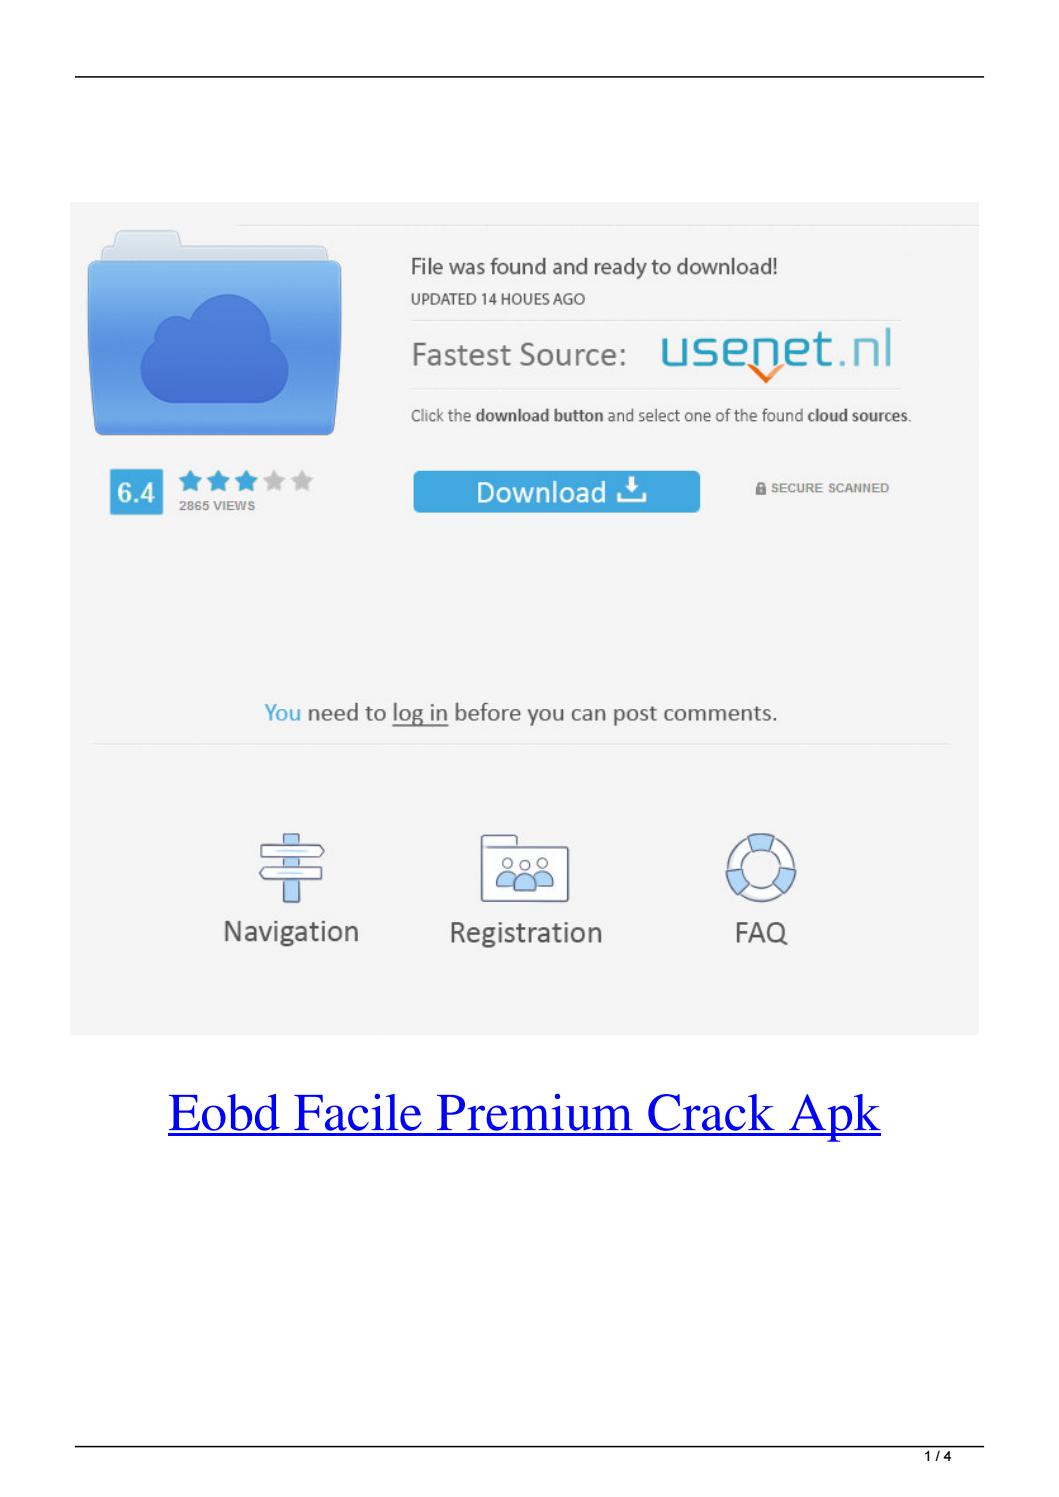 eobd facile premium apk crack